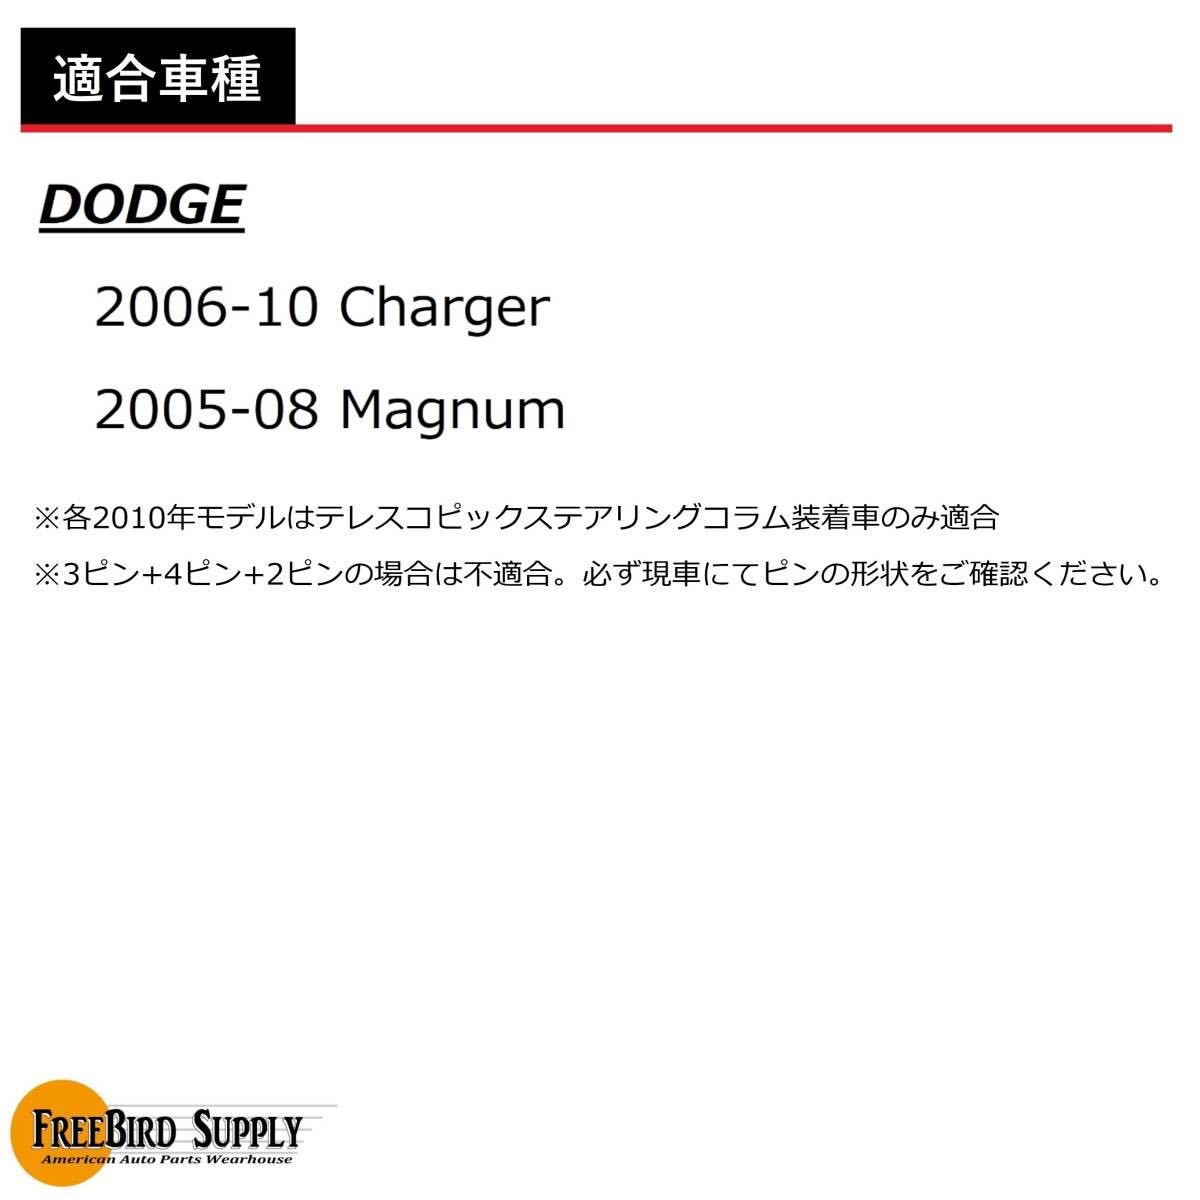 DMG359#1 ステアリング クロックスプリング ウインカー エアバッグ ワイパー ダッジ 2006~2010 チャージャー / 2005~2008 マグナム_画像7